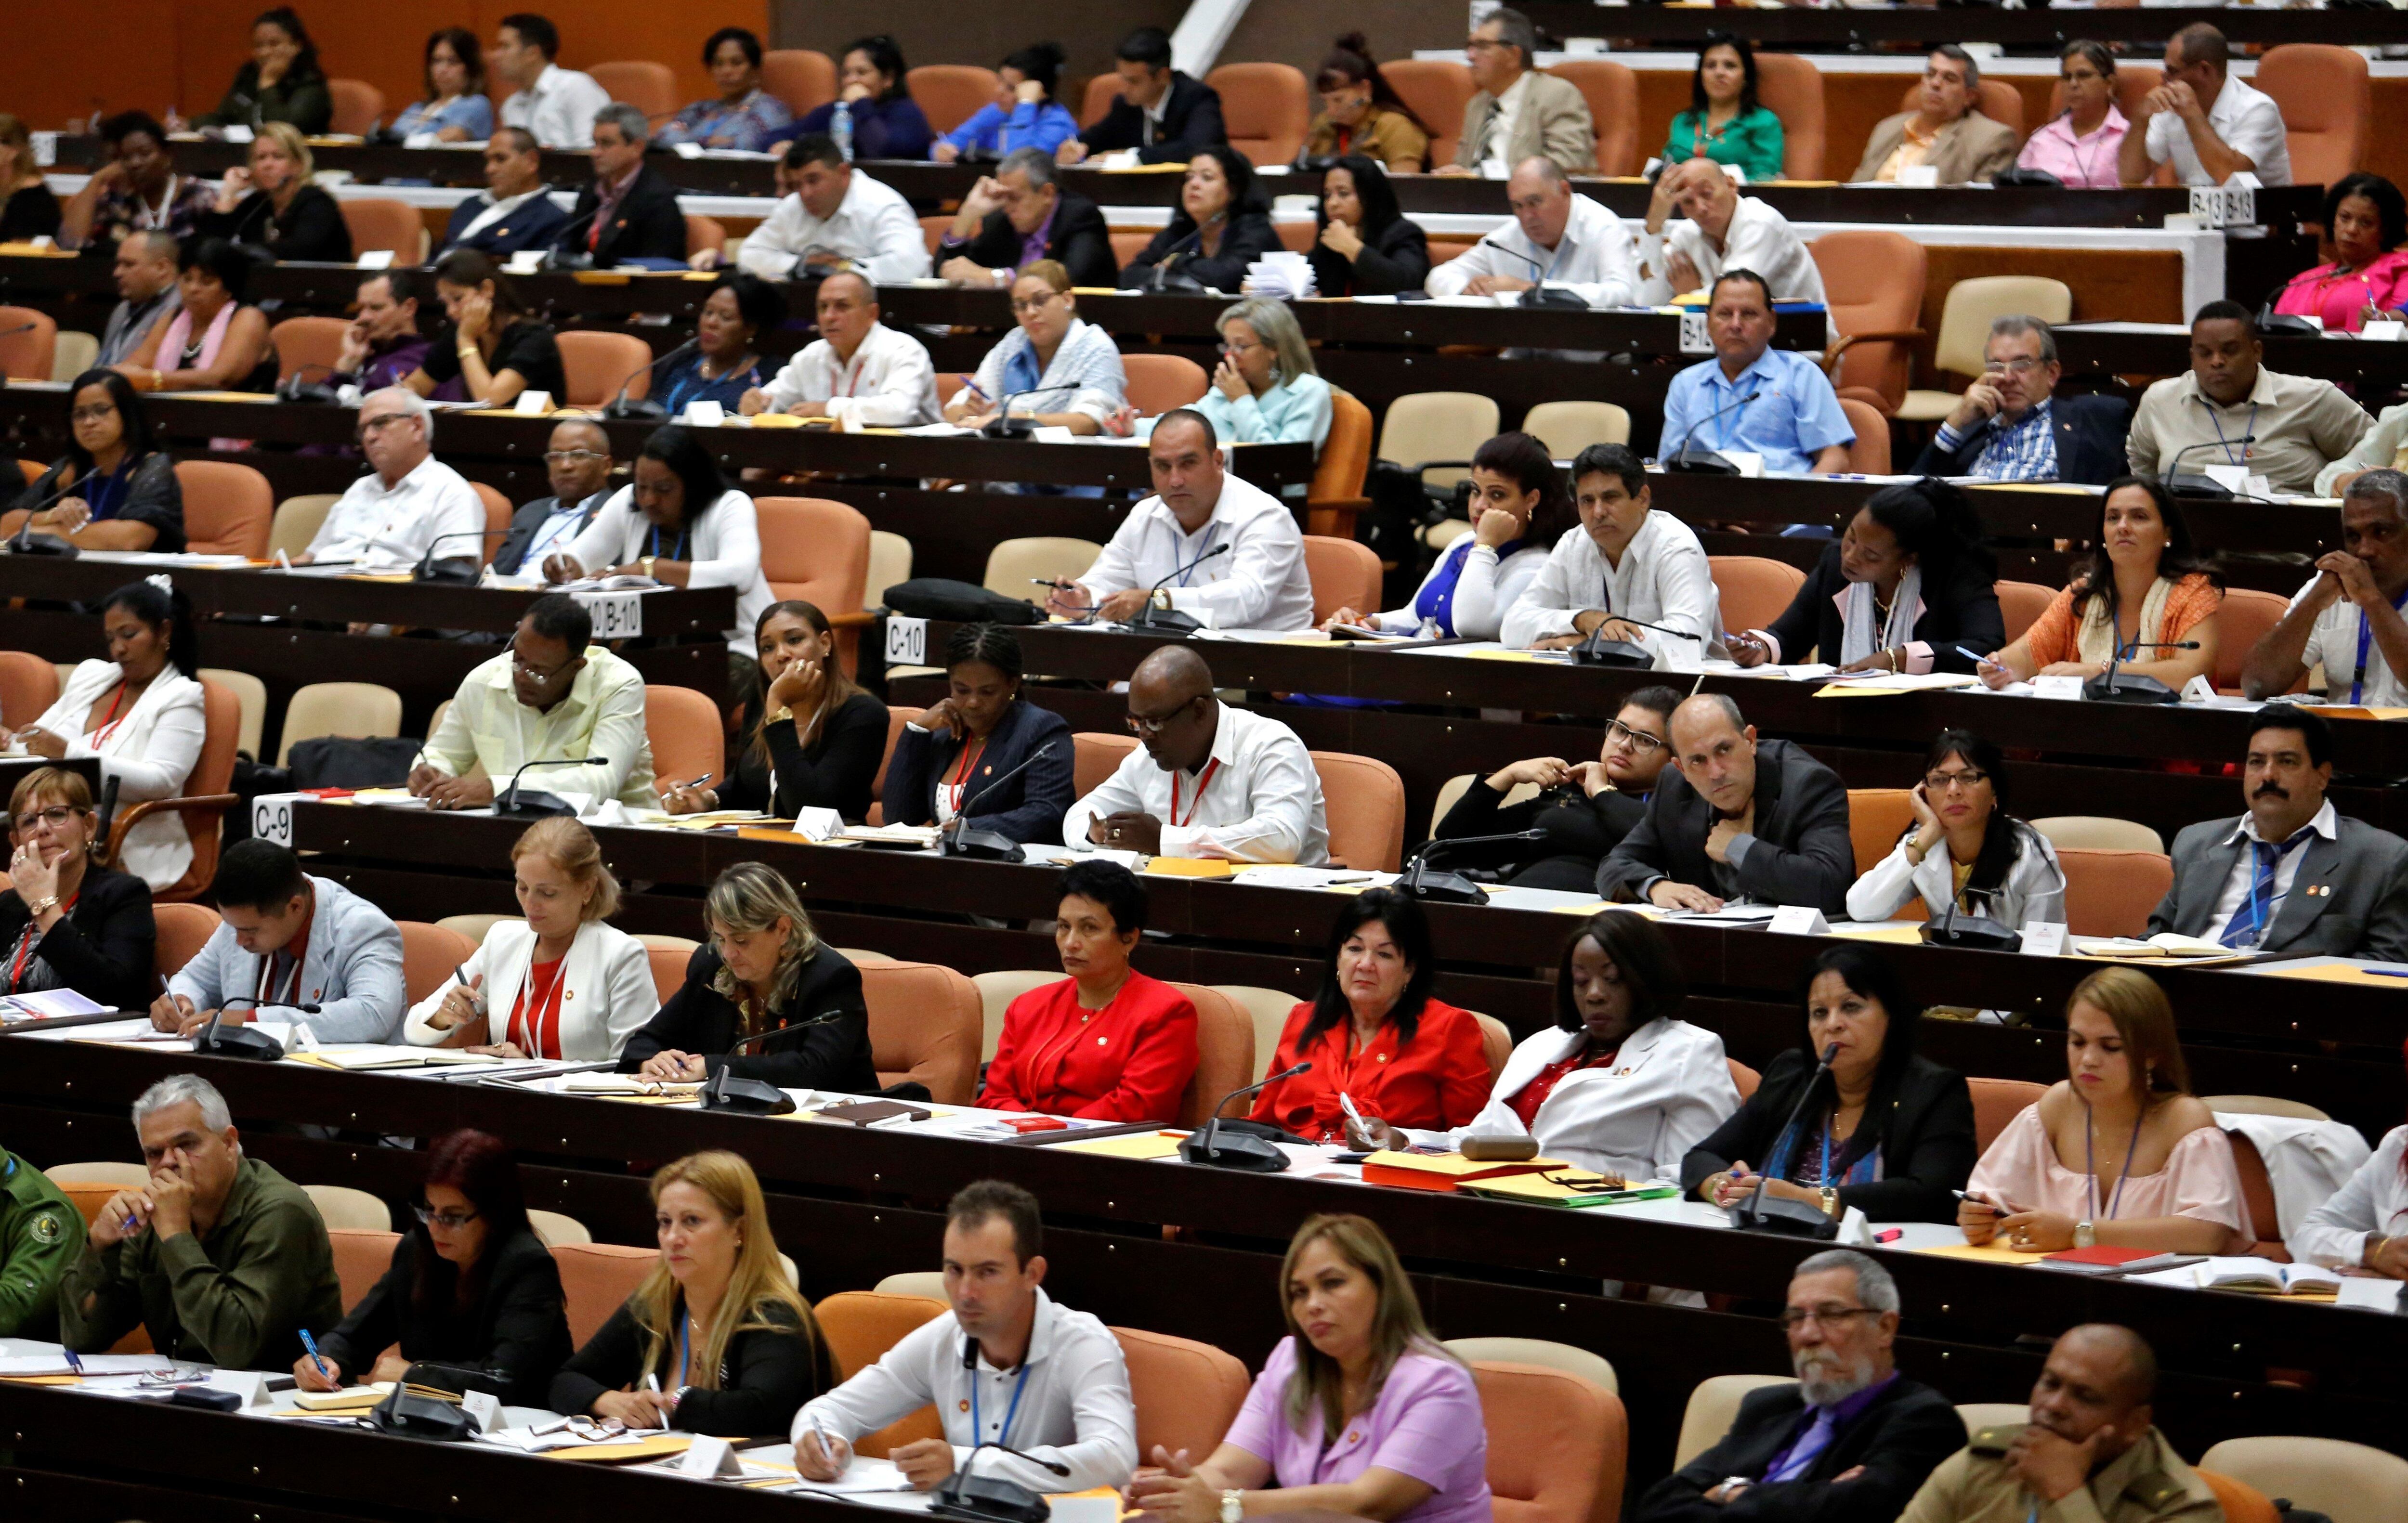 Vista de una sesión de la Asamblea Nacional (Parlamento) en el Palacio de Convenciones de La Habana (Cuba), en una fotografía de archivo. EFE/Yander Zamora